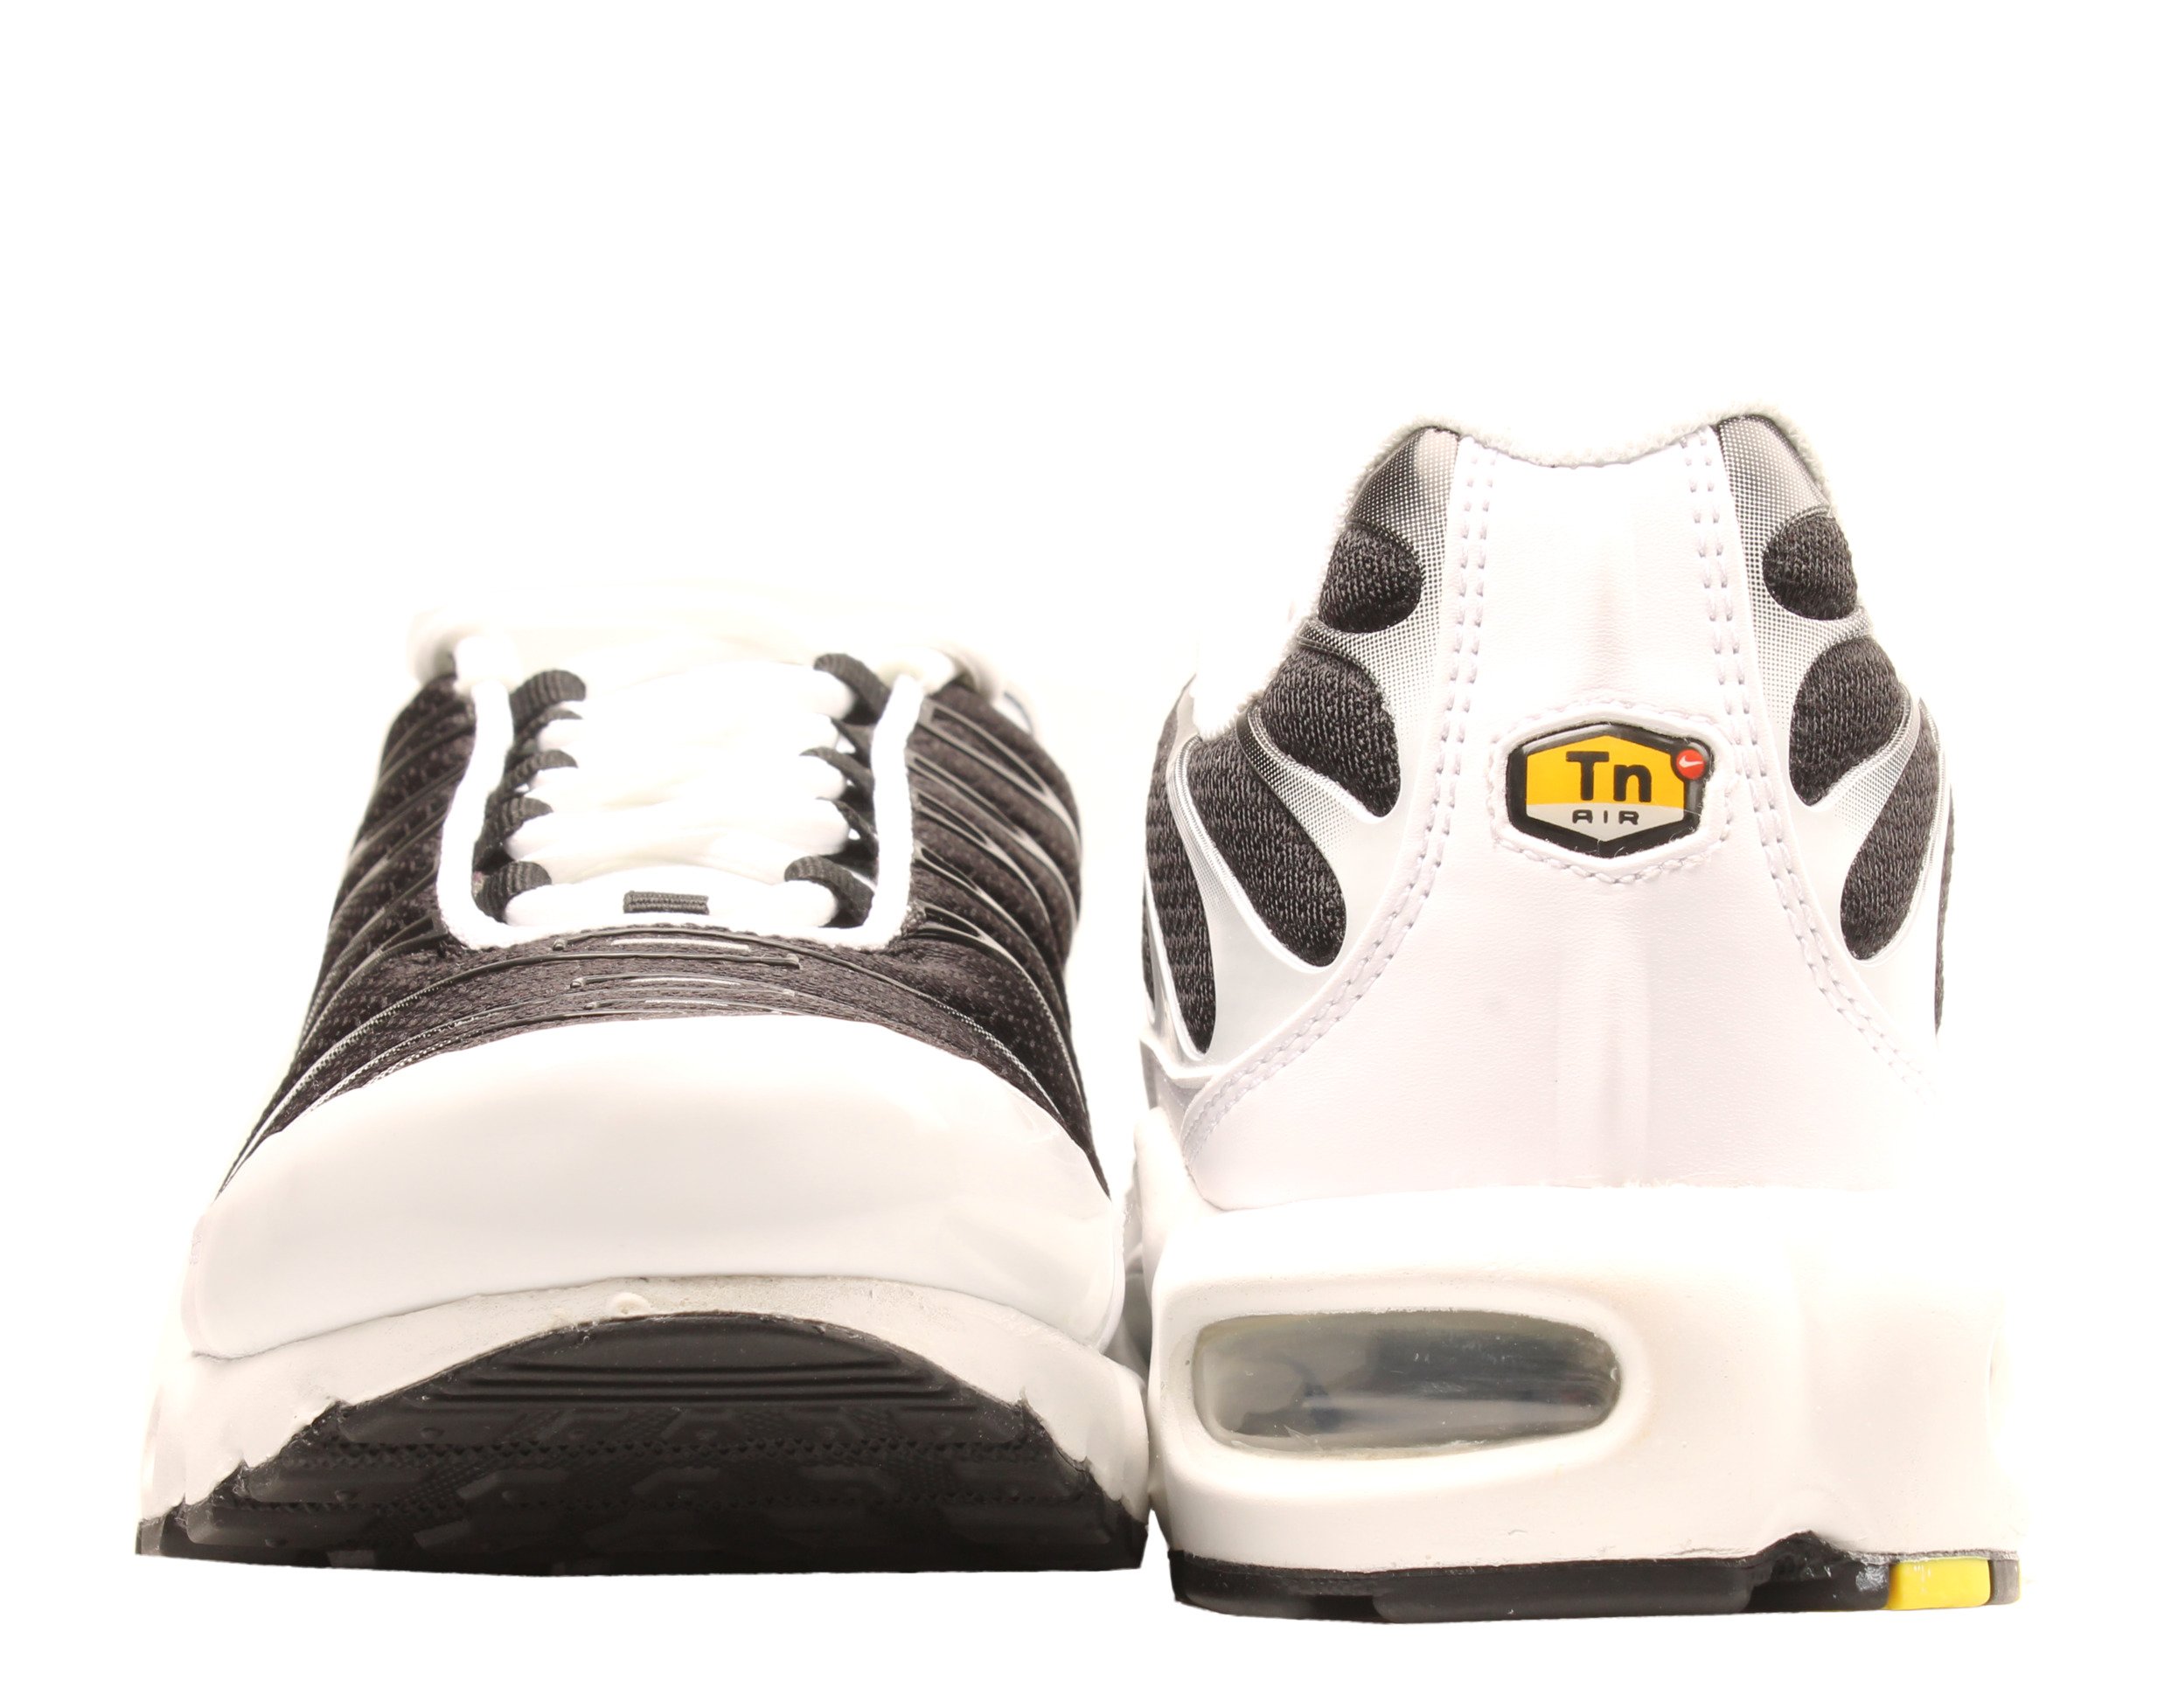 Nike Air Max Plus White/Black-Metallic Pewter Men's Running Shoes CT1094-102